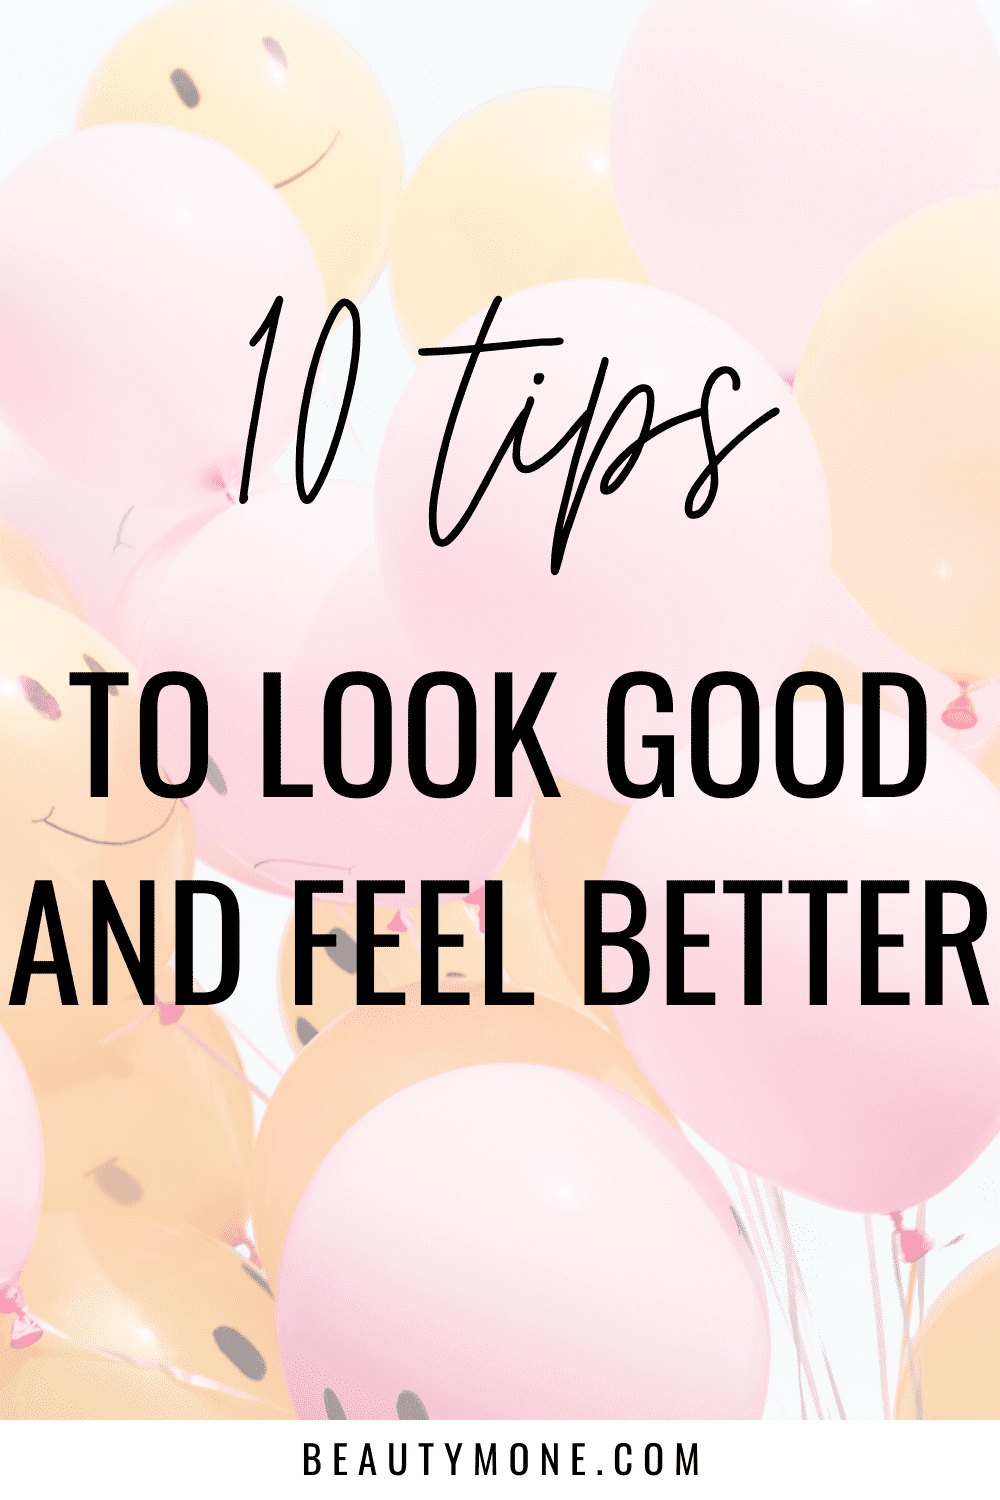 10 Tippek, hogy jól néz ki, és jobban érzi magát .. Beautymone